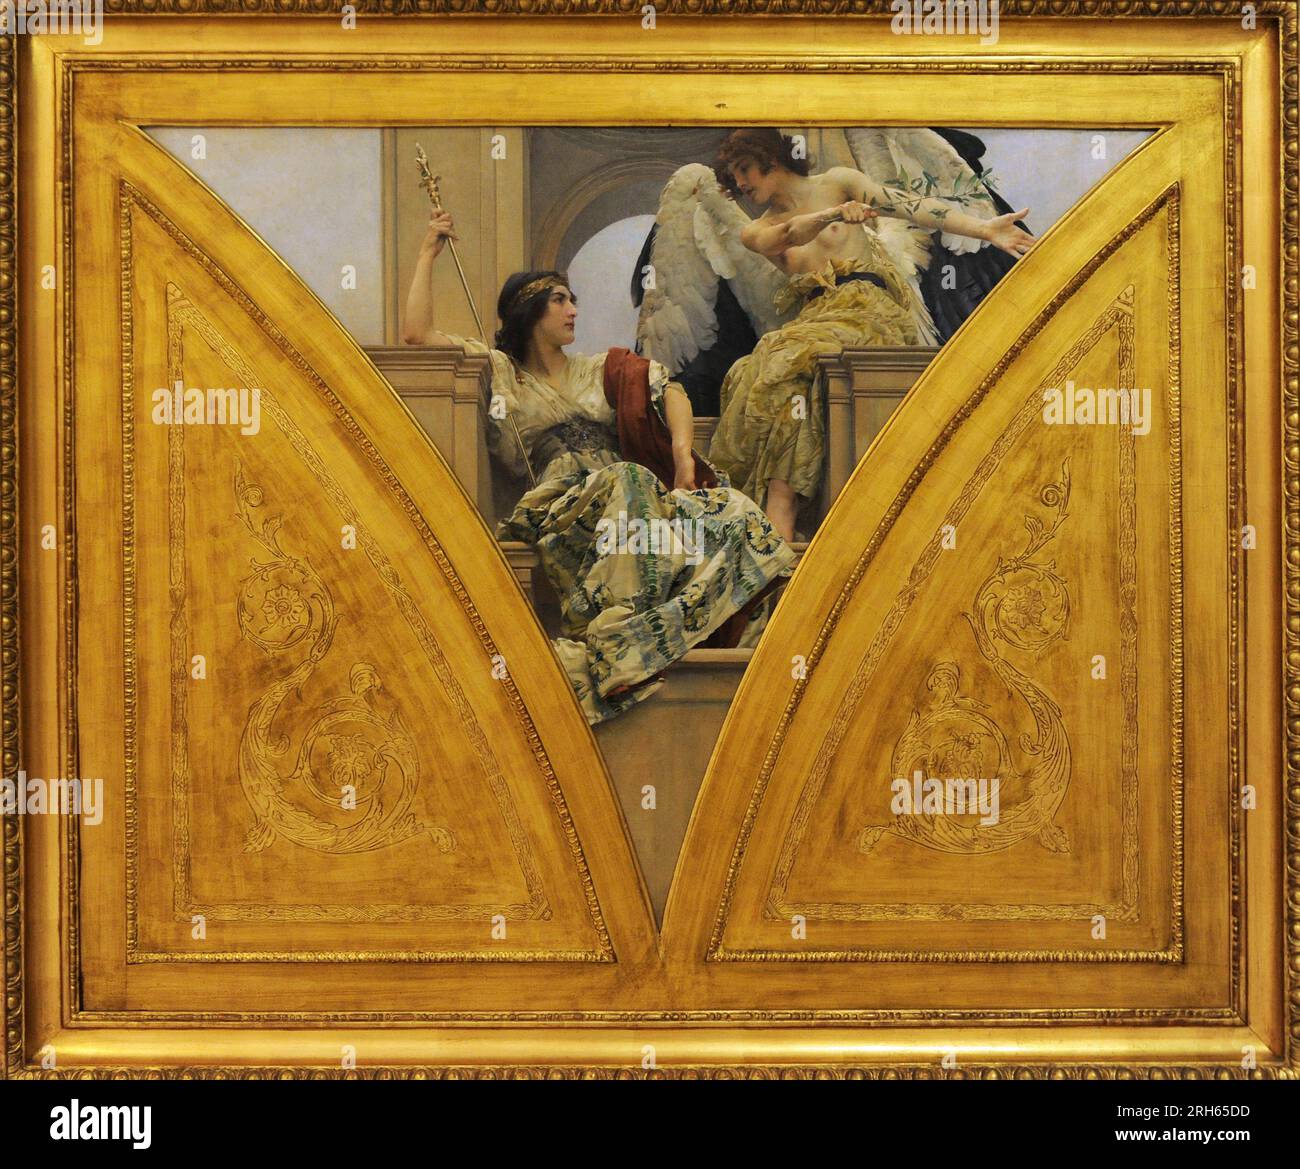 Vojtech Hynais (1854-1925) Peintre tchèque. Puissance et progrès (conception de décoration pour le Panthéon du Musée National), 1899. Galerie nationale, Prague, République tchèque. Banque D'Images